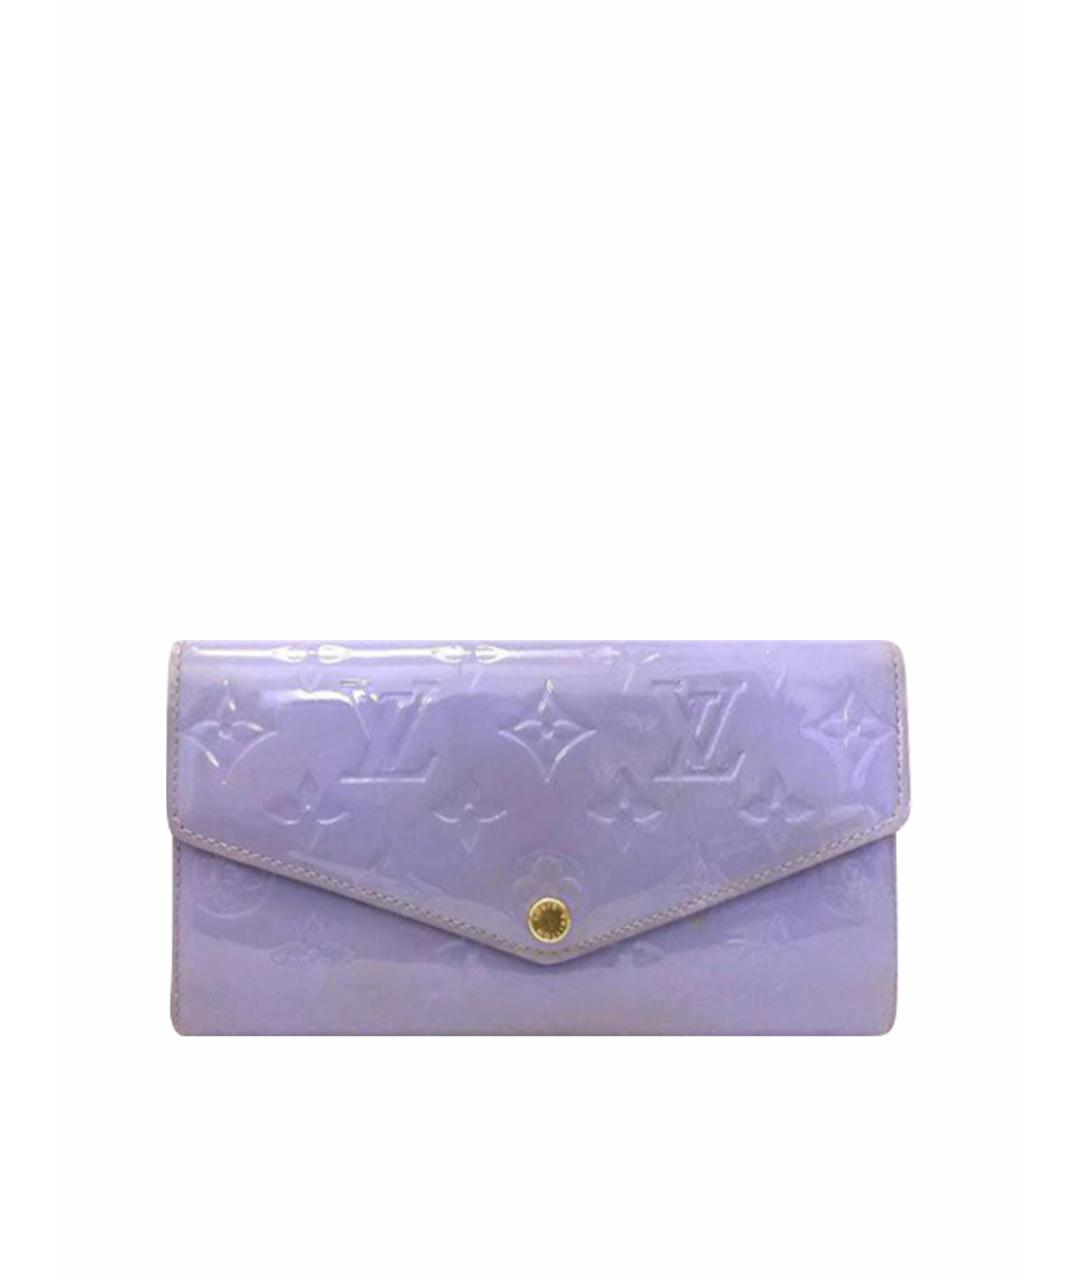 LOUIS VUITTON PRE-OWNED Фиолетовый кошелек из лакированной кожи, фото 1